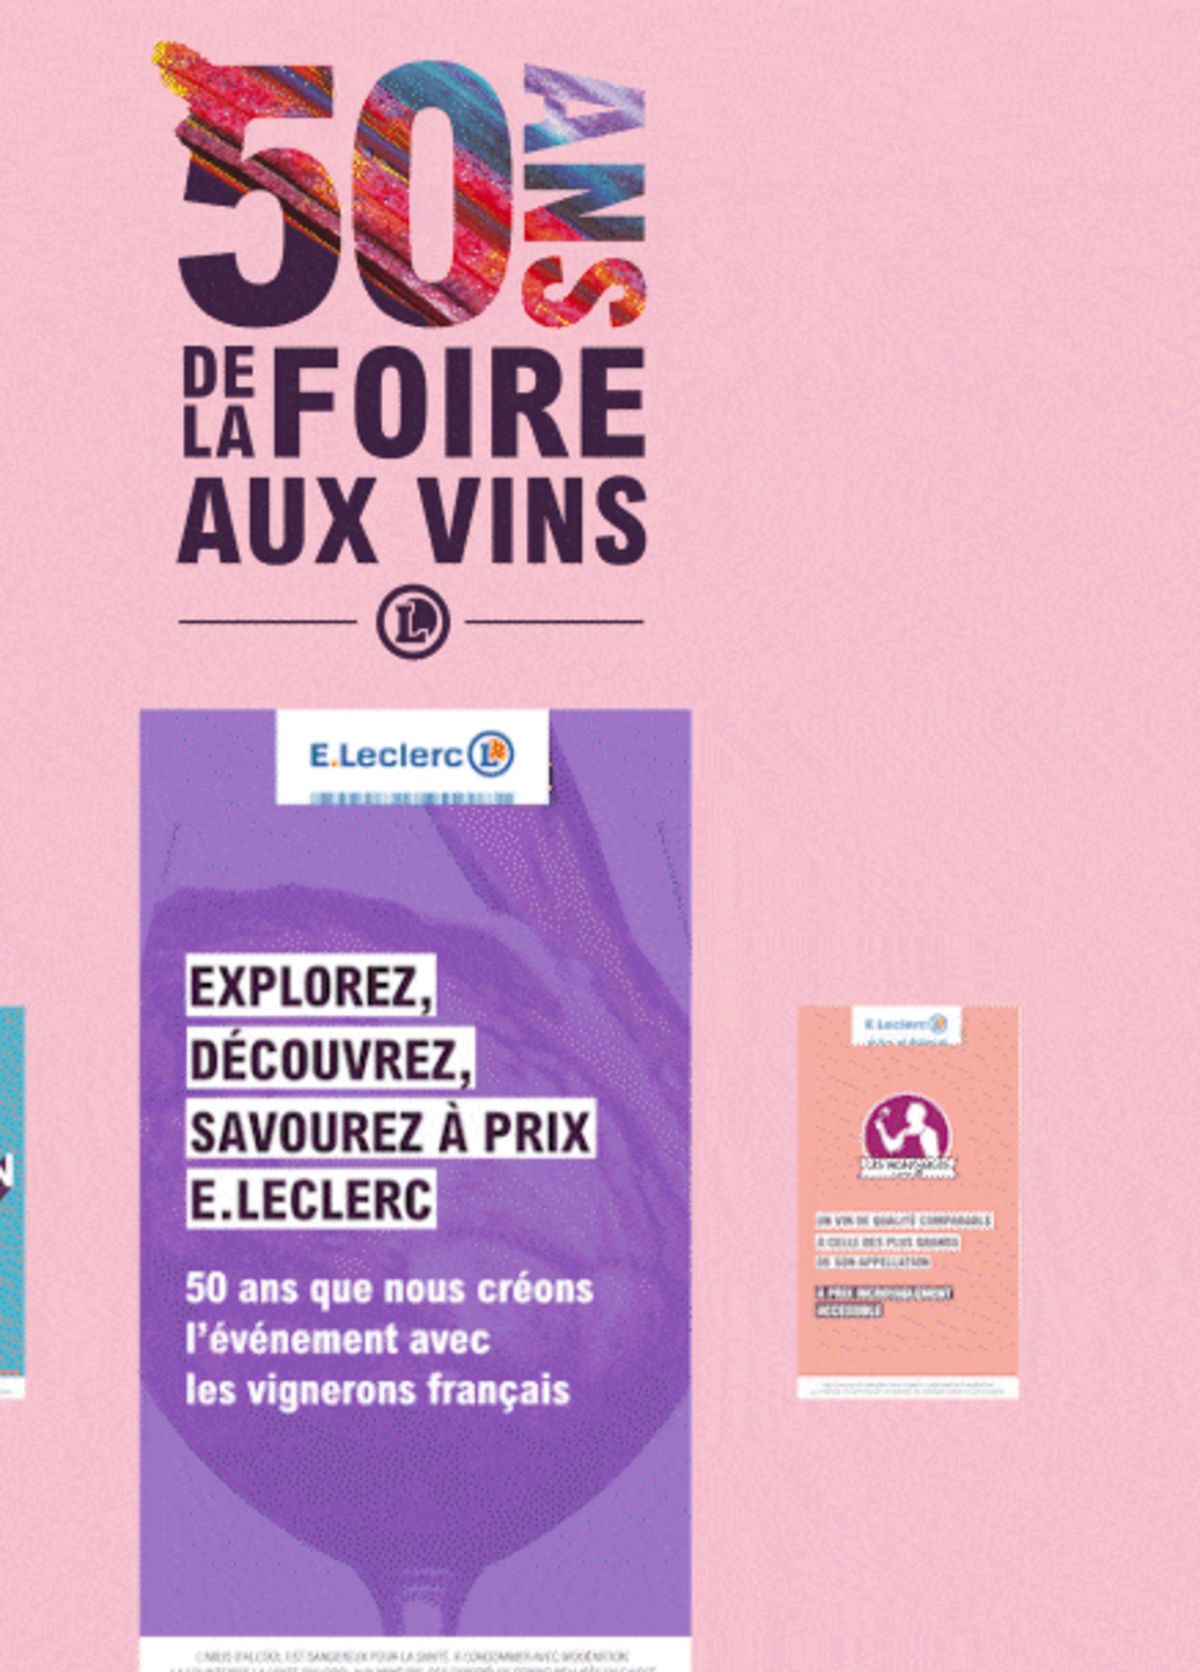 Catalogue Foire Aux Vins - Mixte, page 00246